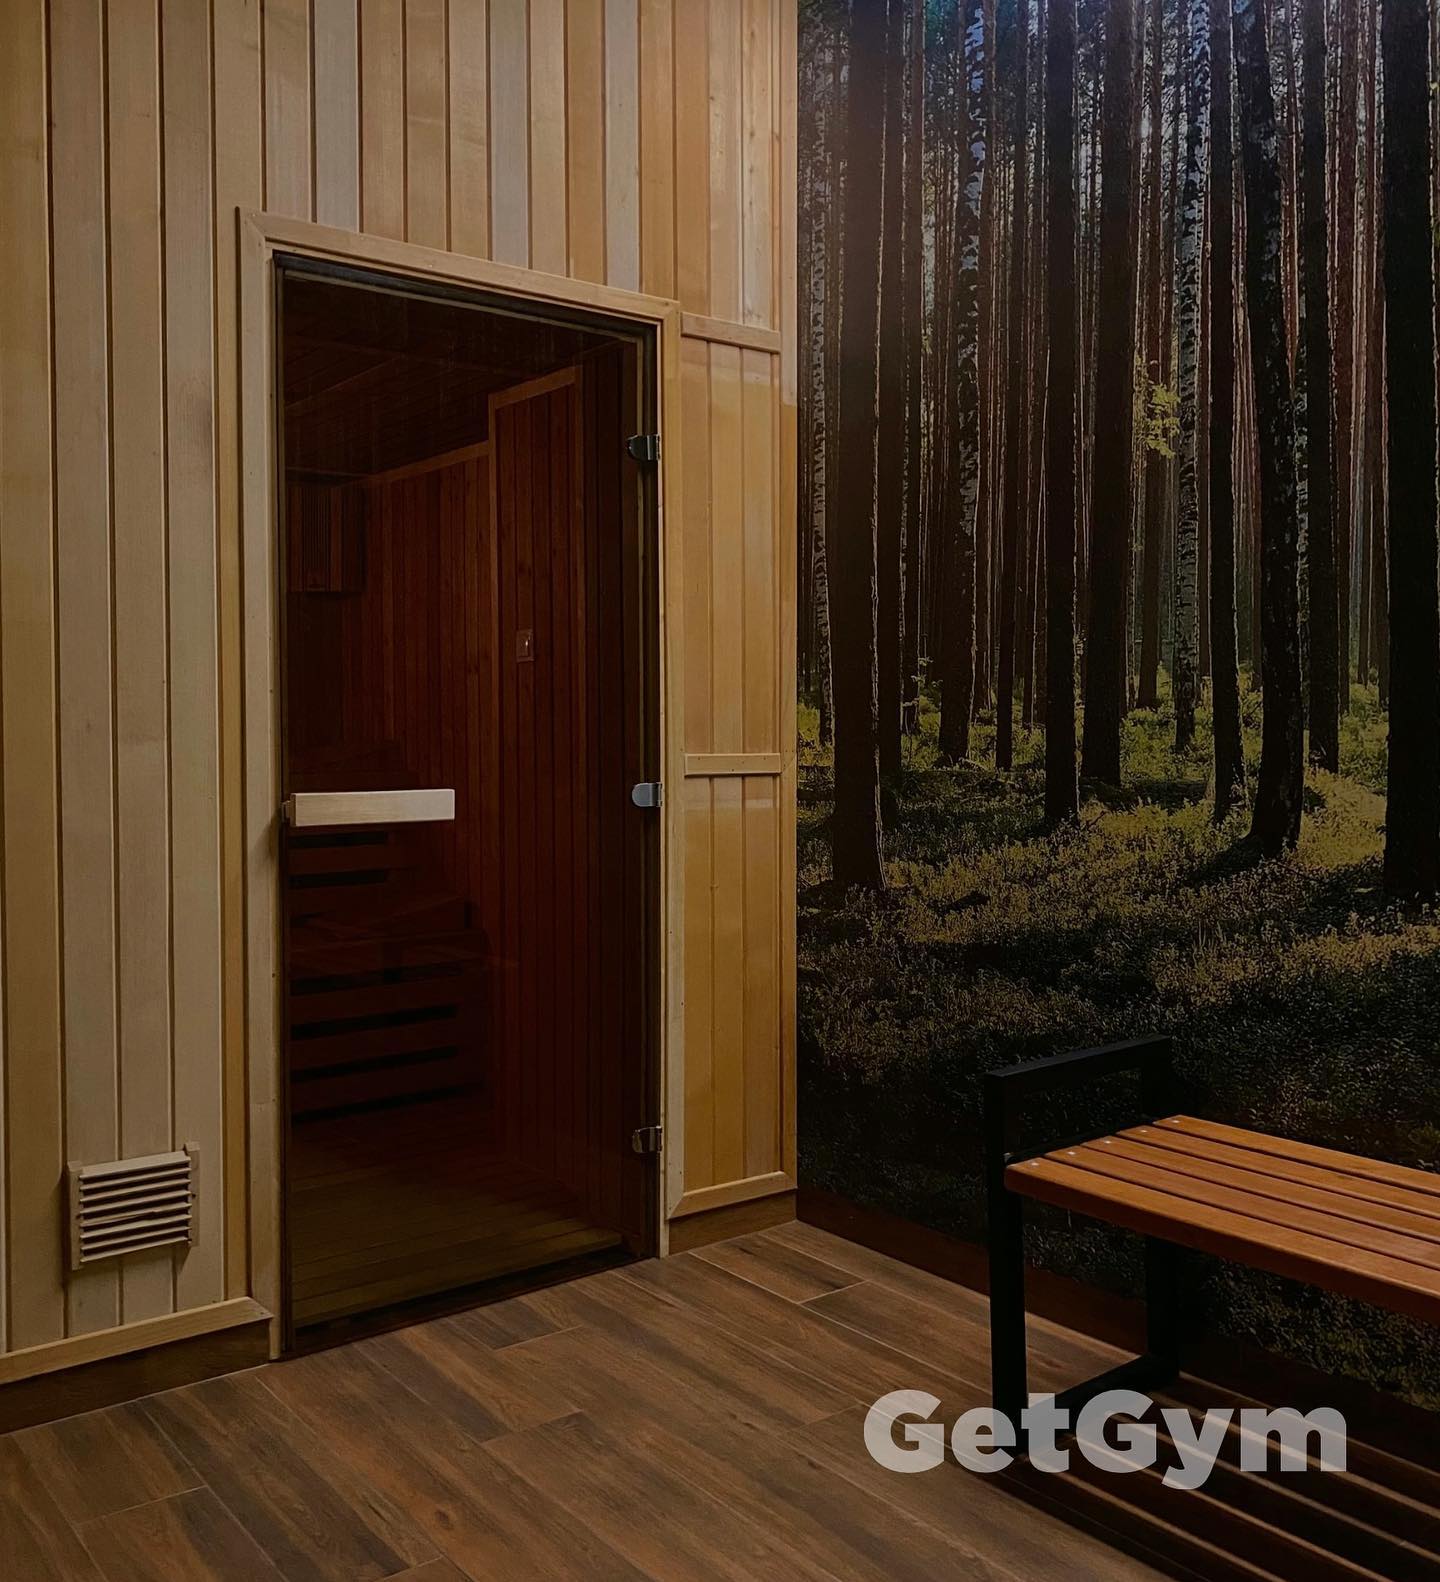 sauna siłownia getgym